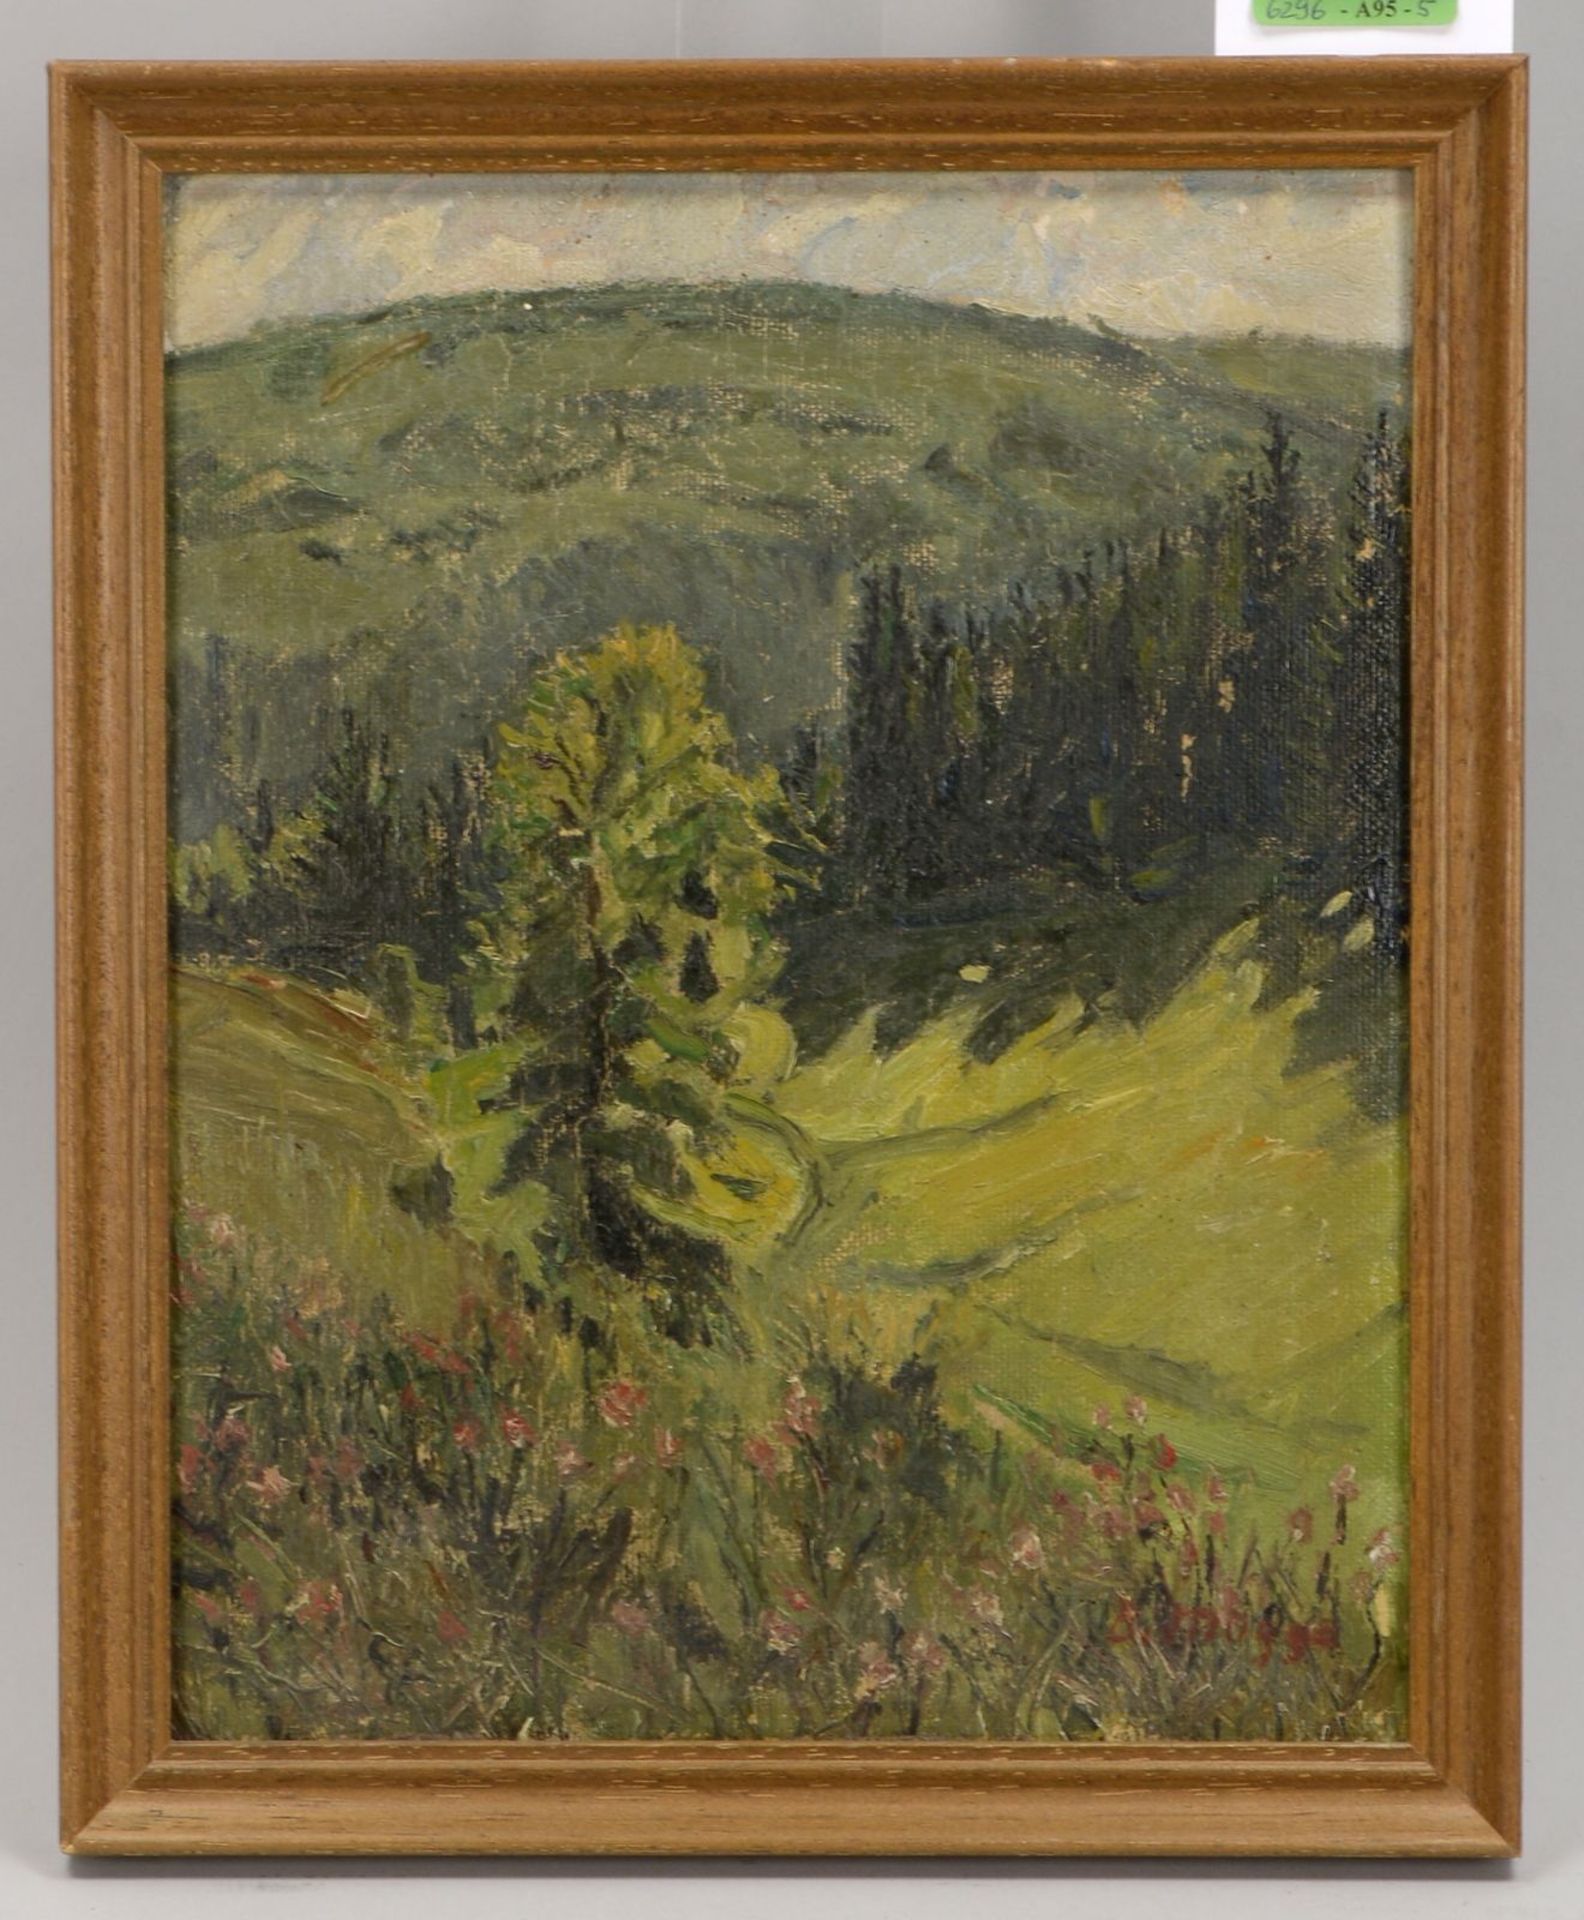 M&uuml;gge, Berthold (1896 - 1970), &#039;H&uuml;gelige Landschaft&#039;, &Ouml;l auf Malkarton/gera